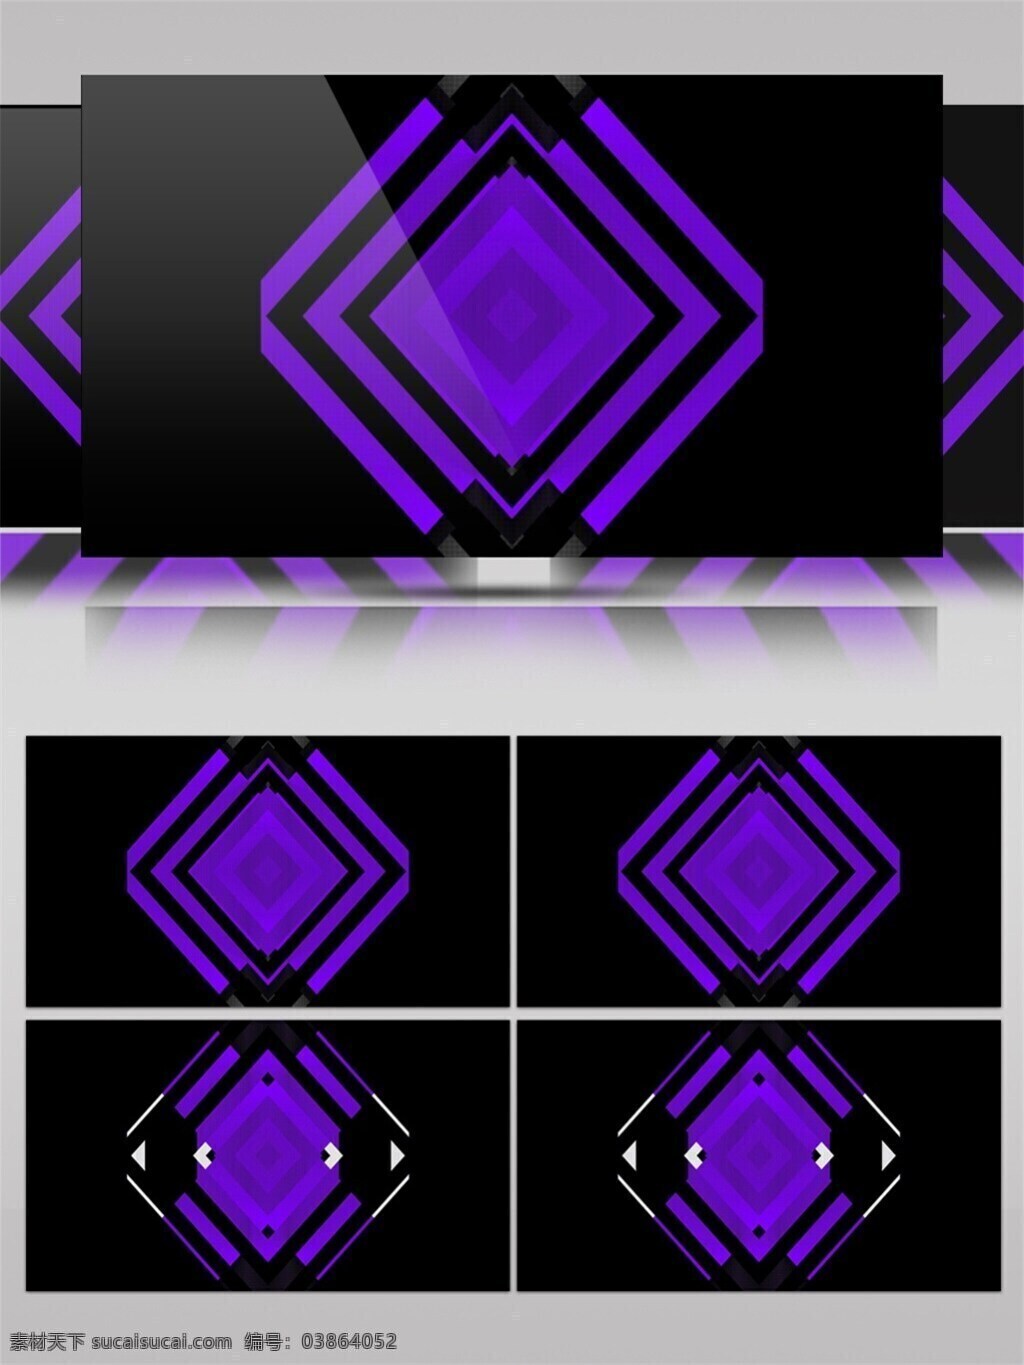 紫色 几何 变换 矩形 高清 视频 神秘紫色 背景 动态变幻 视频素材 动态视频素材